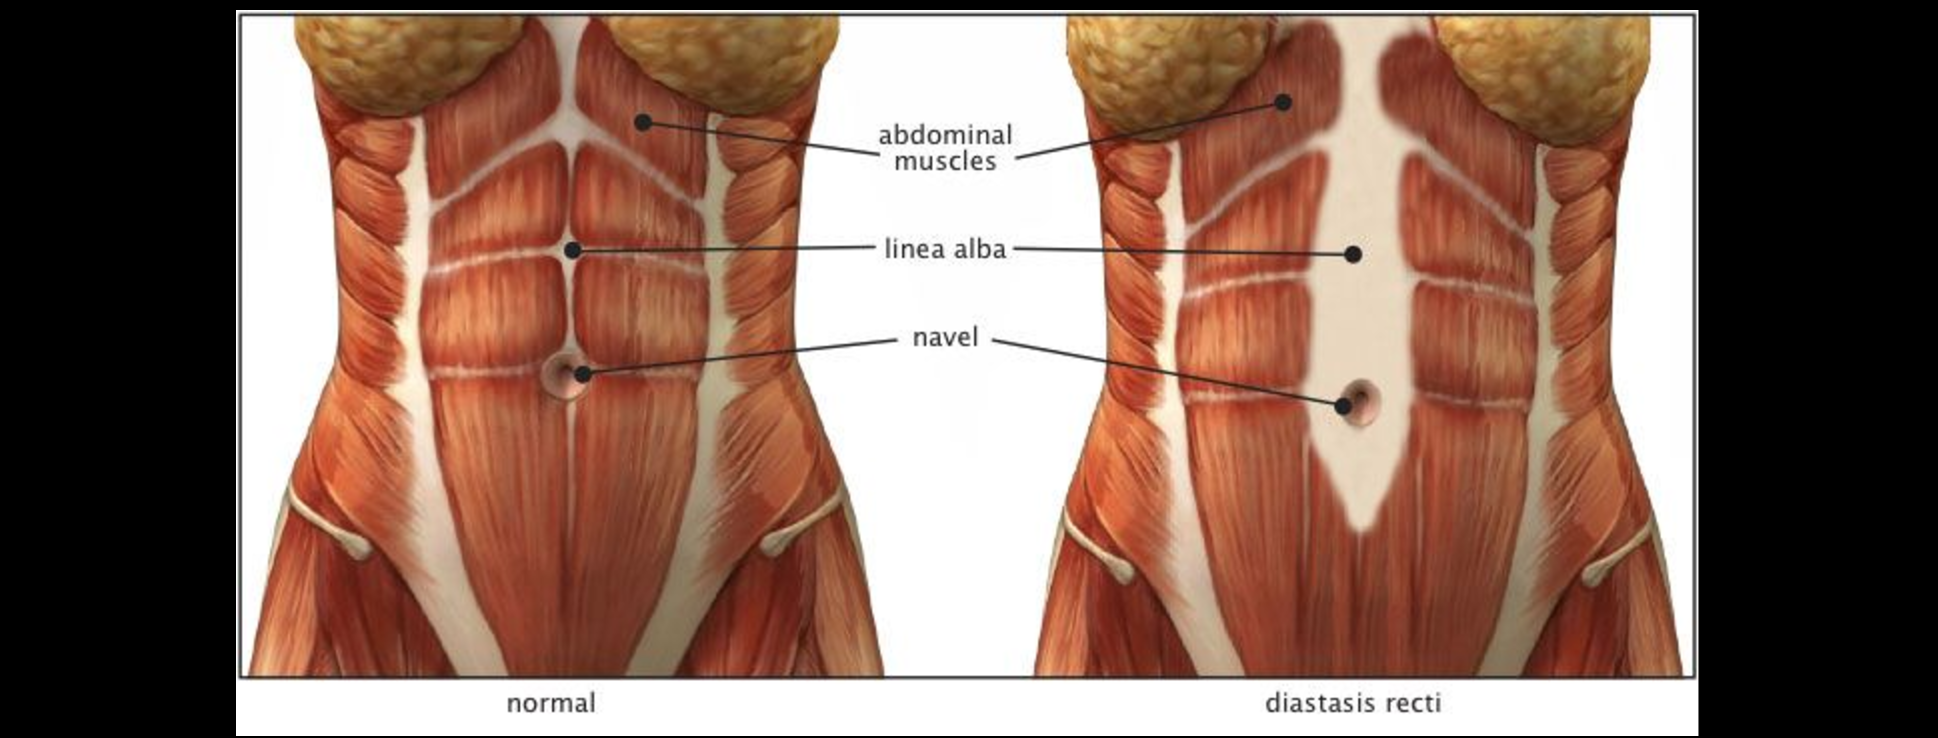 Причины появления диастаза прямых мышц живота